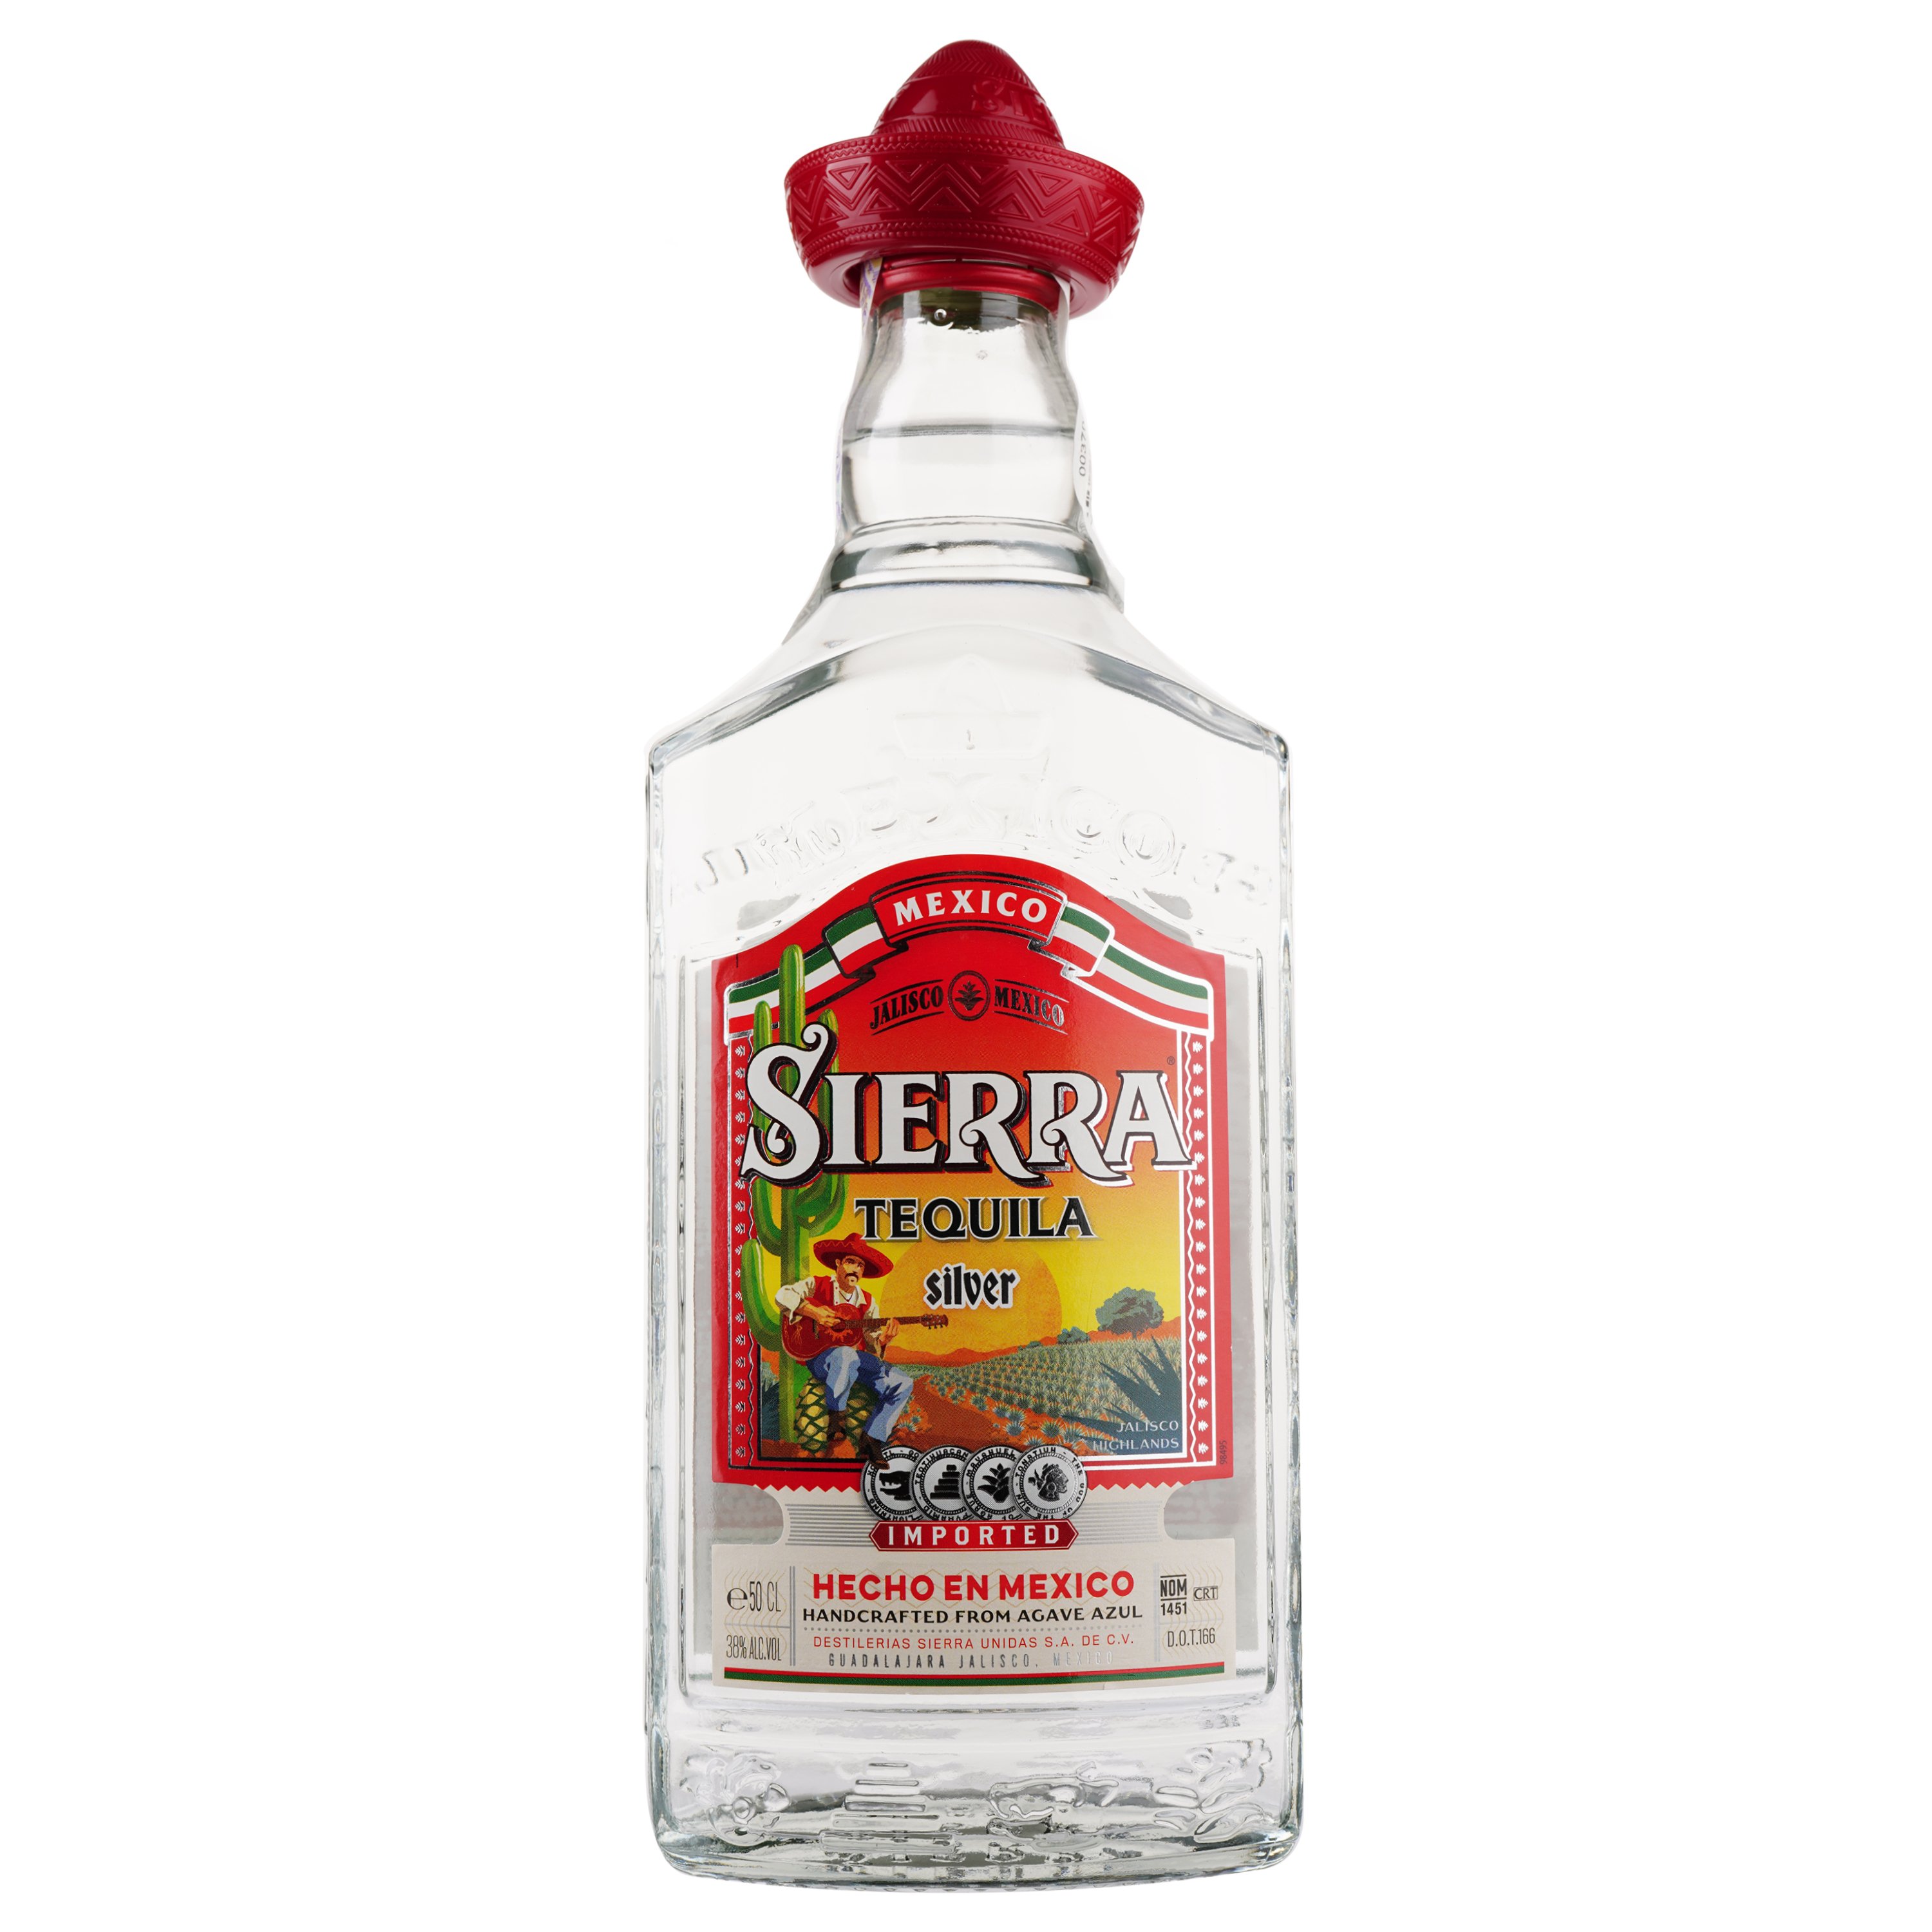 Текила Sierra Silver, 38%, 0,5 л - фото 1